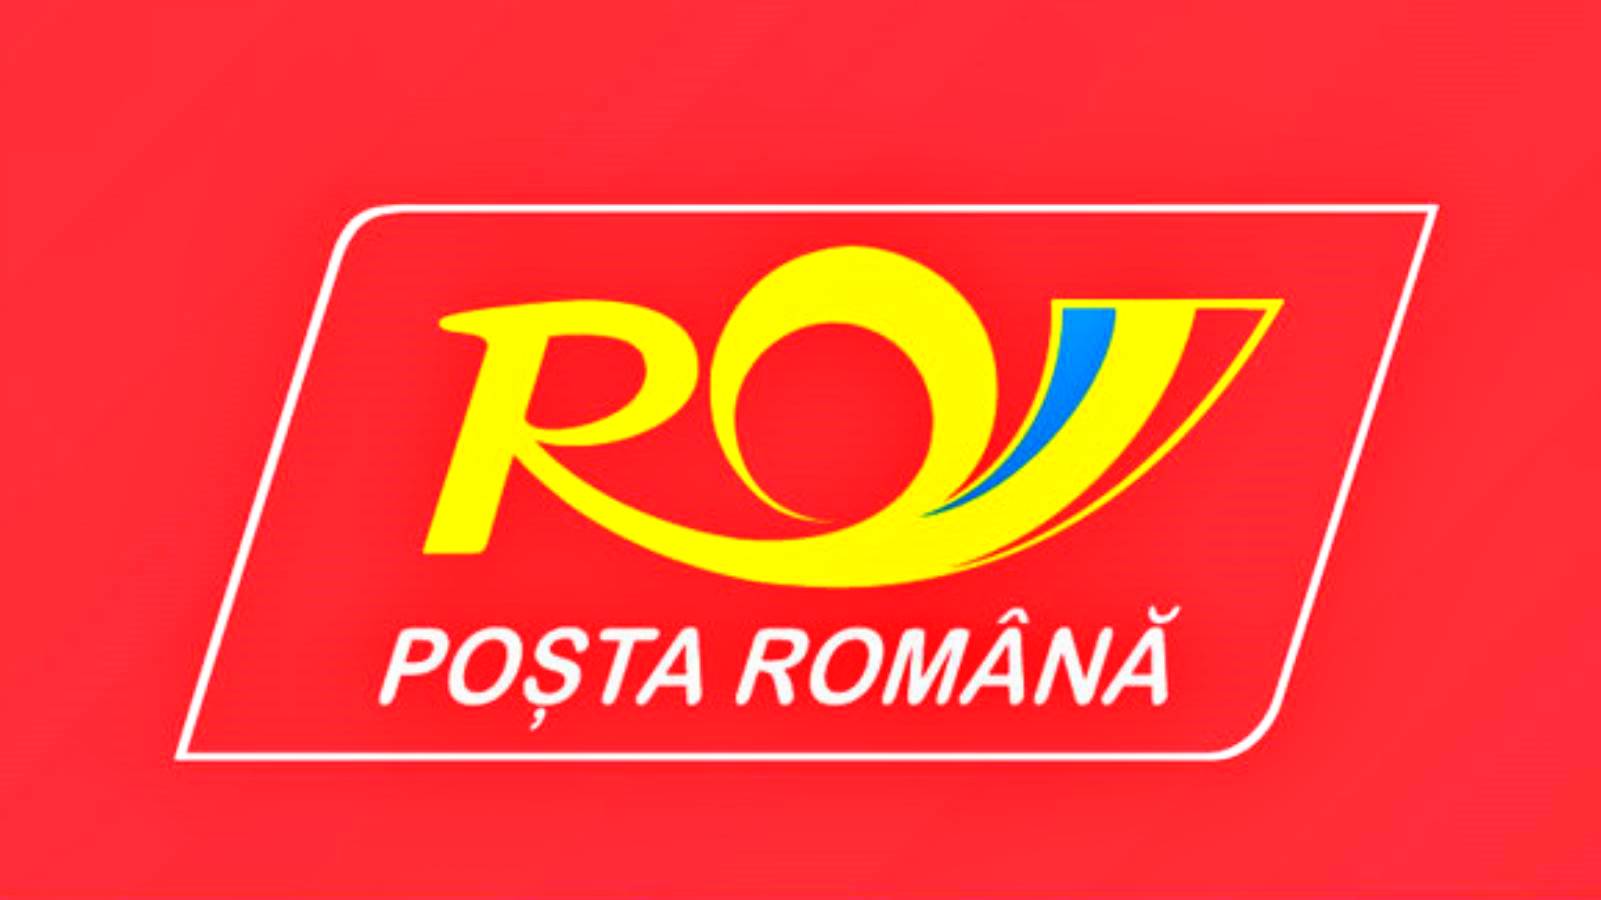 Roemeense post Hoe u online geld kunt sturen naar iedereen in het land